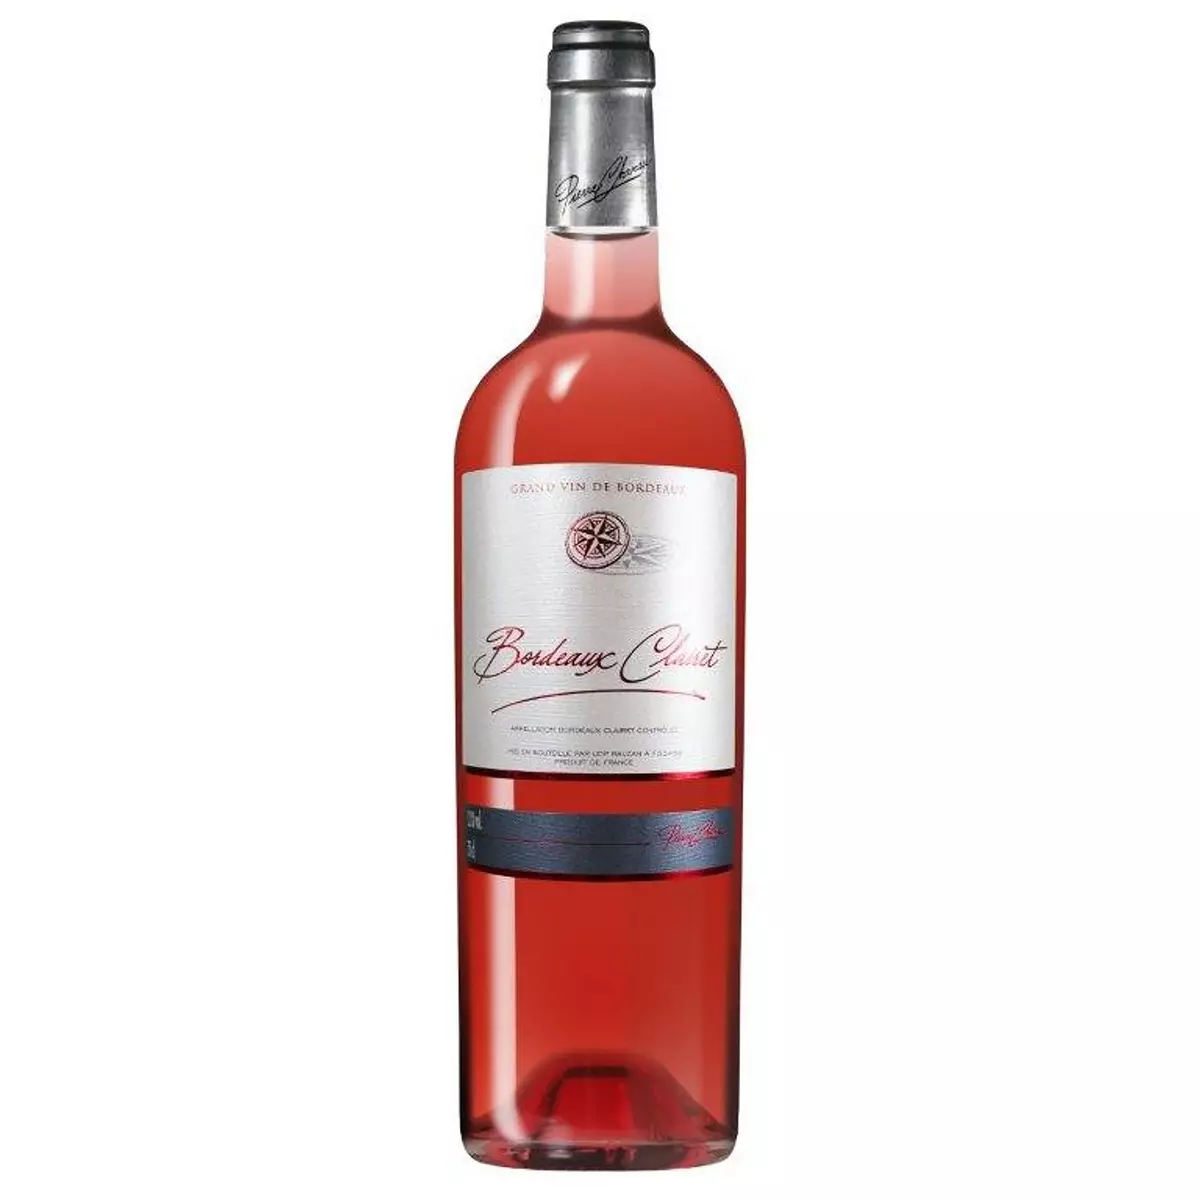 PIERRE CHANAU AOP Bordeaux-Clairet rosé 75cl